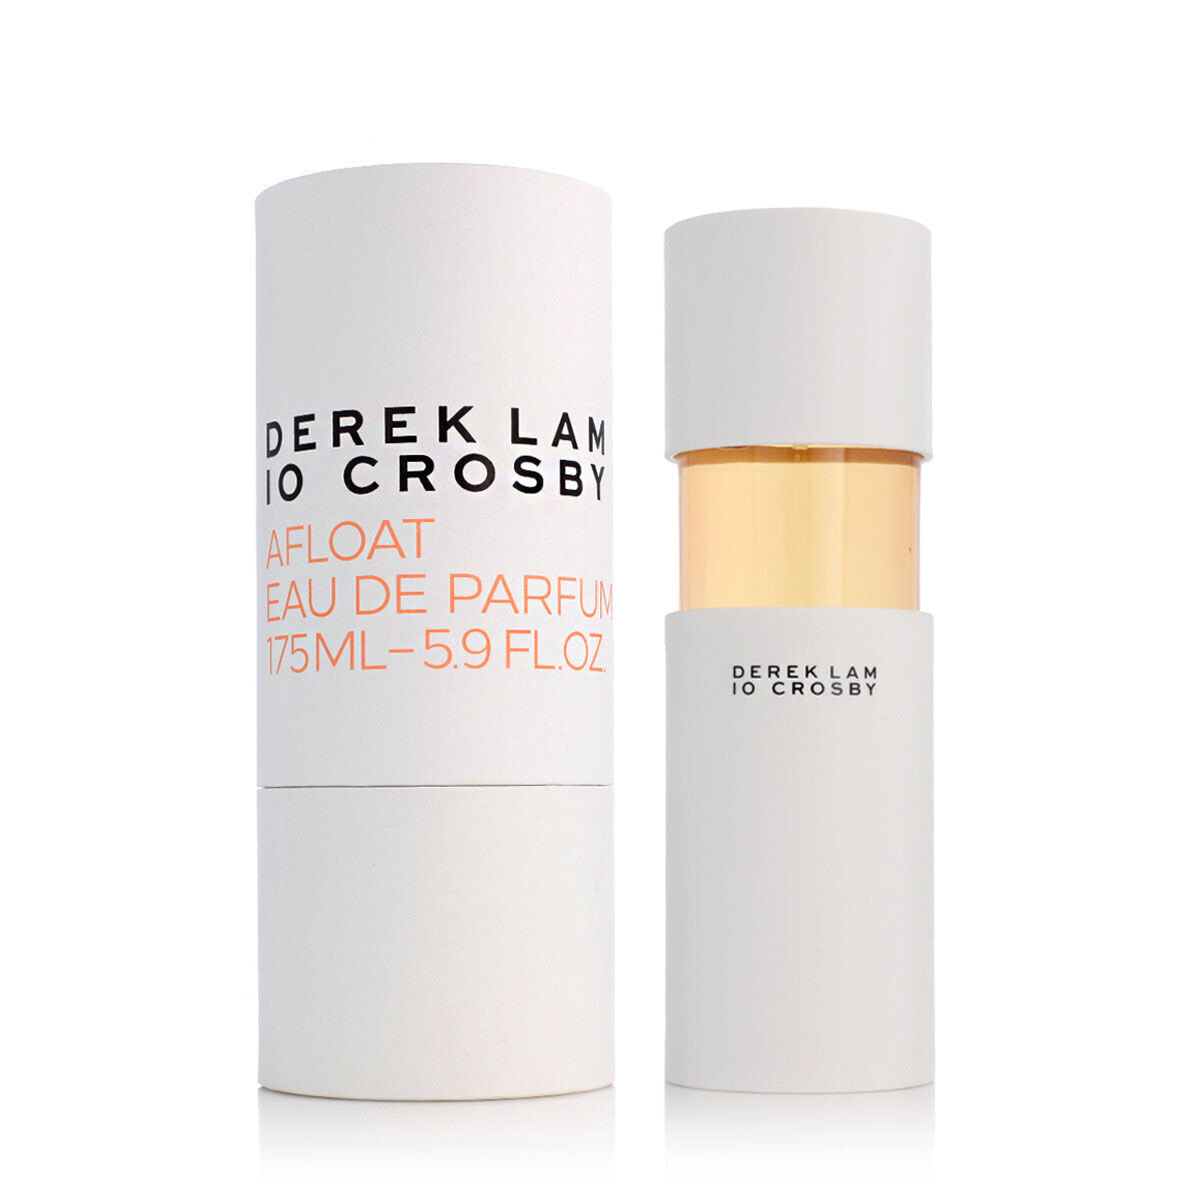 Женская парфюмерия Derek Lam 10 Crosby EDP Afloat 175 ml